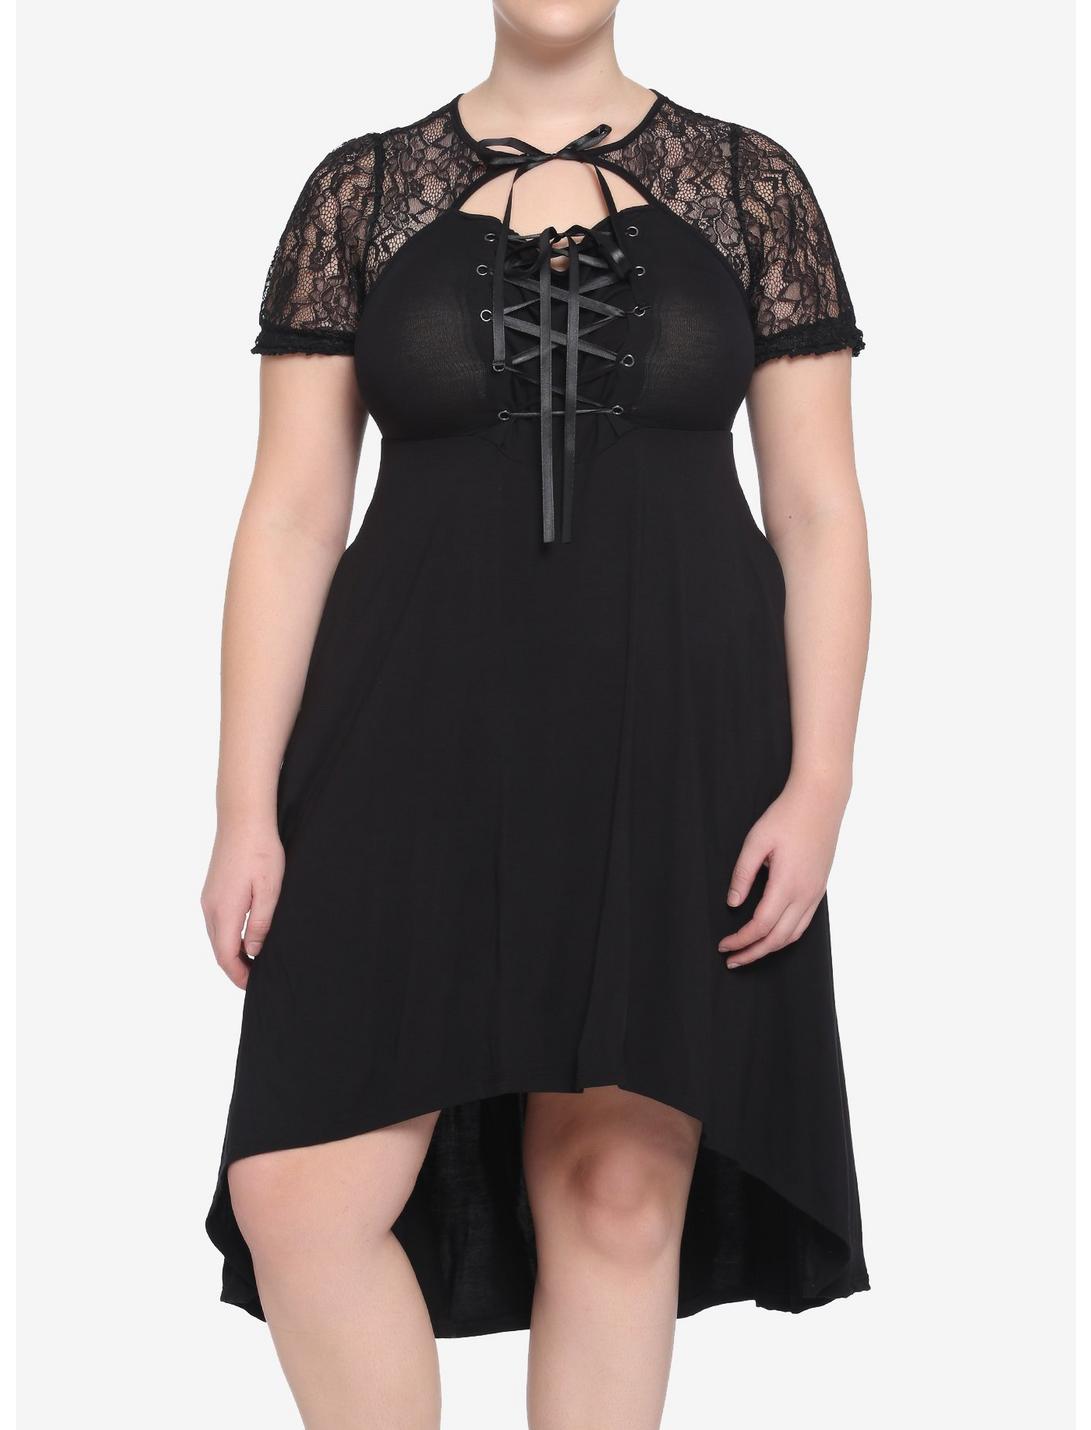 Black Lace-Up Hi-Low Dress Plus Size, BLACK, hi-res